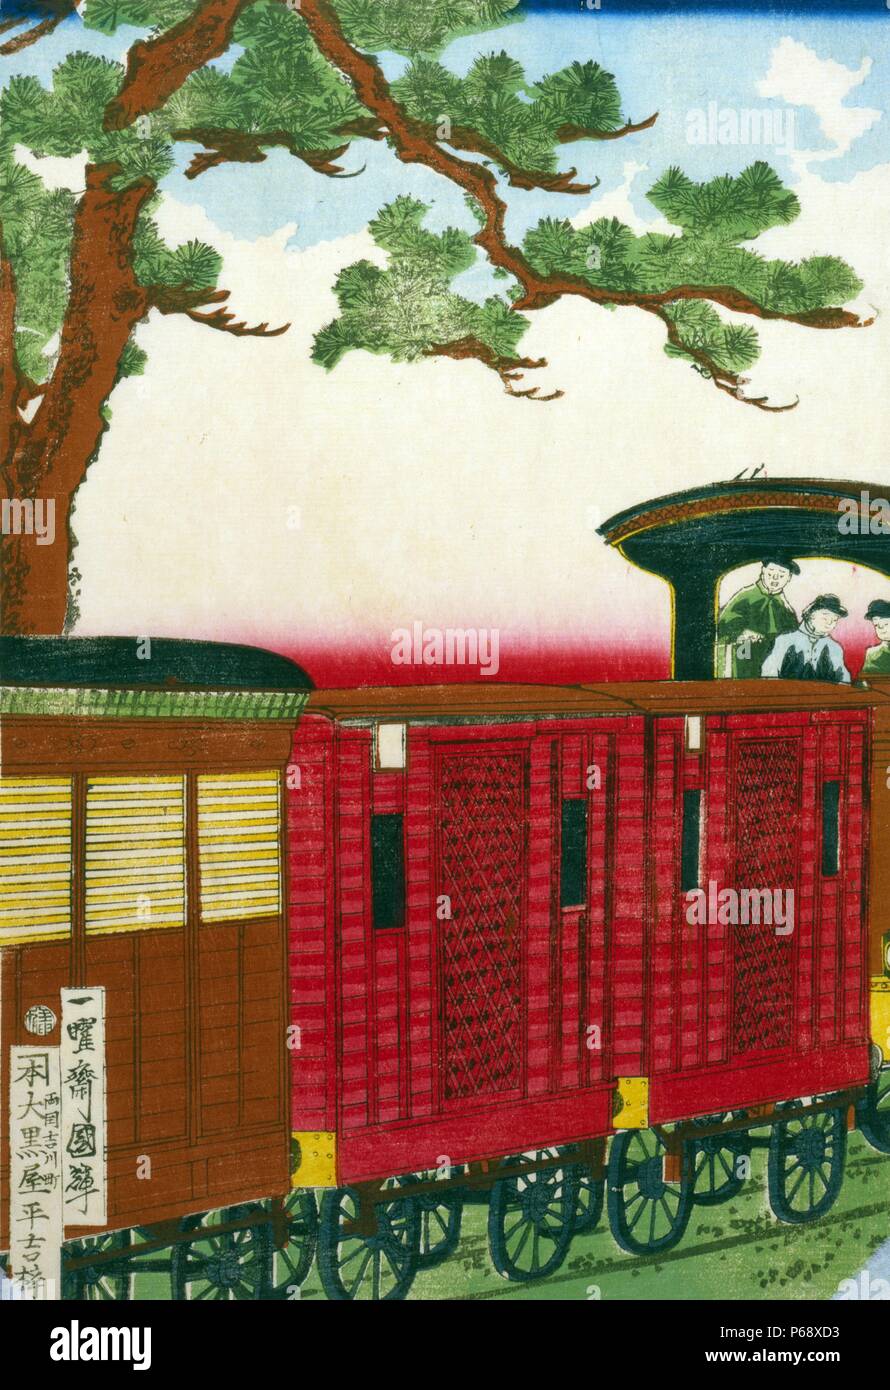 Gravure sur bois japonaise coloriés à la main. L'image montre un train à vapeur tirant ses chariots, en passant sous un grand pin. Le conducteur et son équipage peut être vu à la droite de l'image. En date du 1872. Banque D'Images